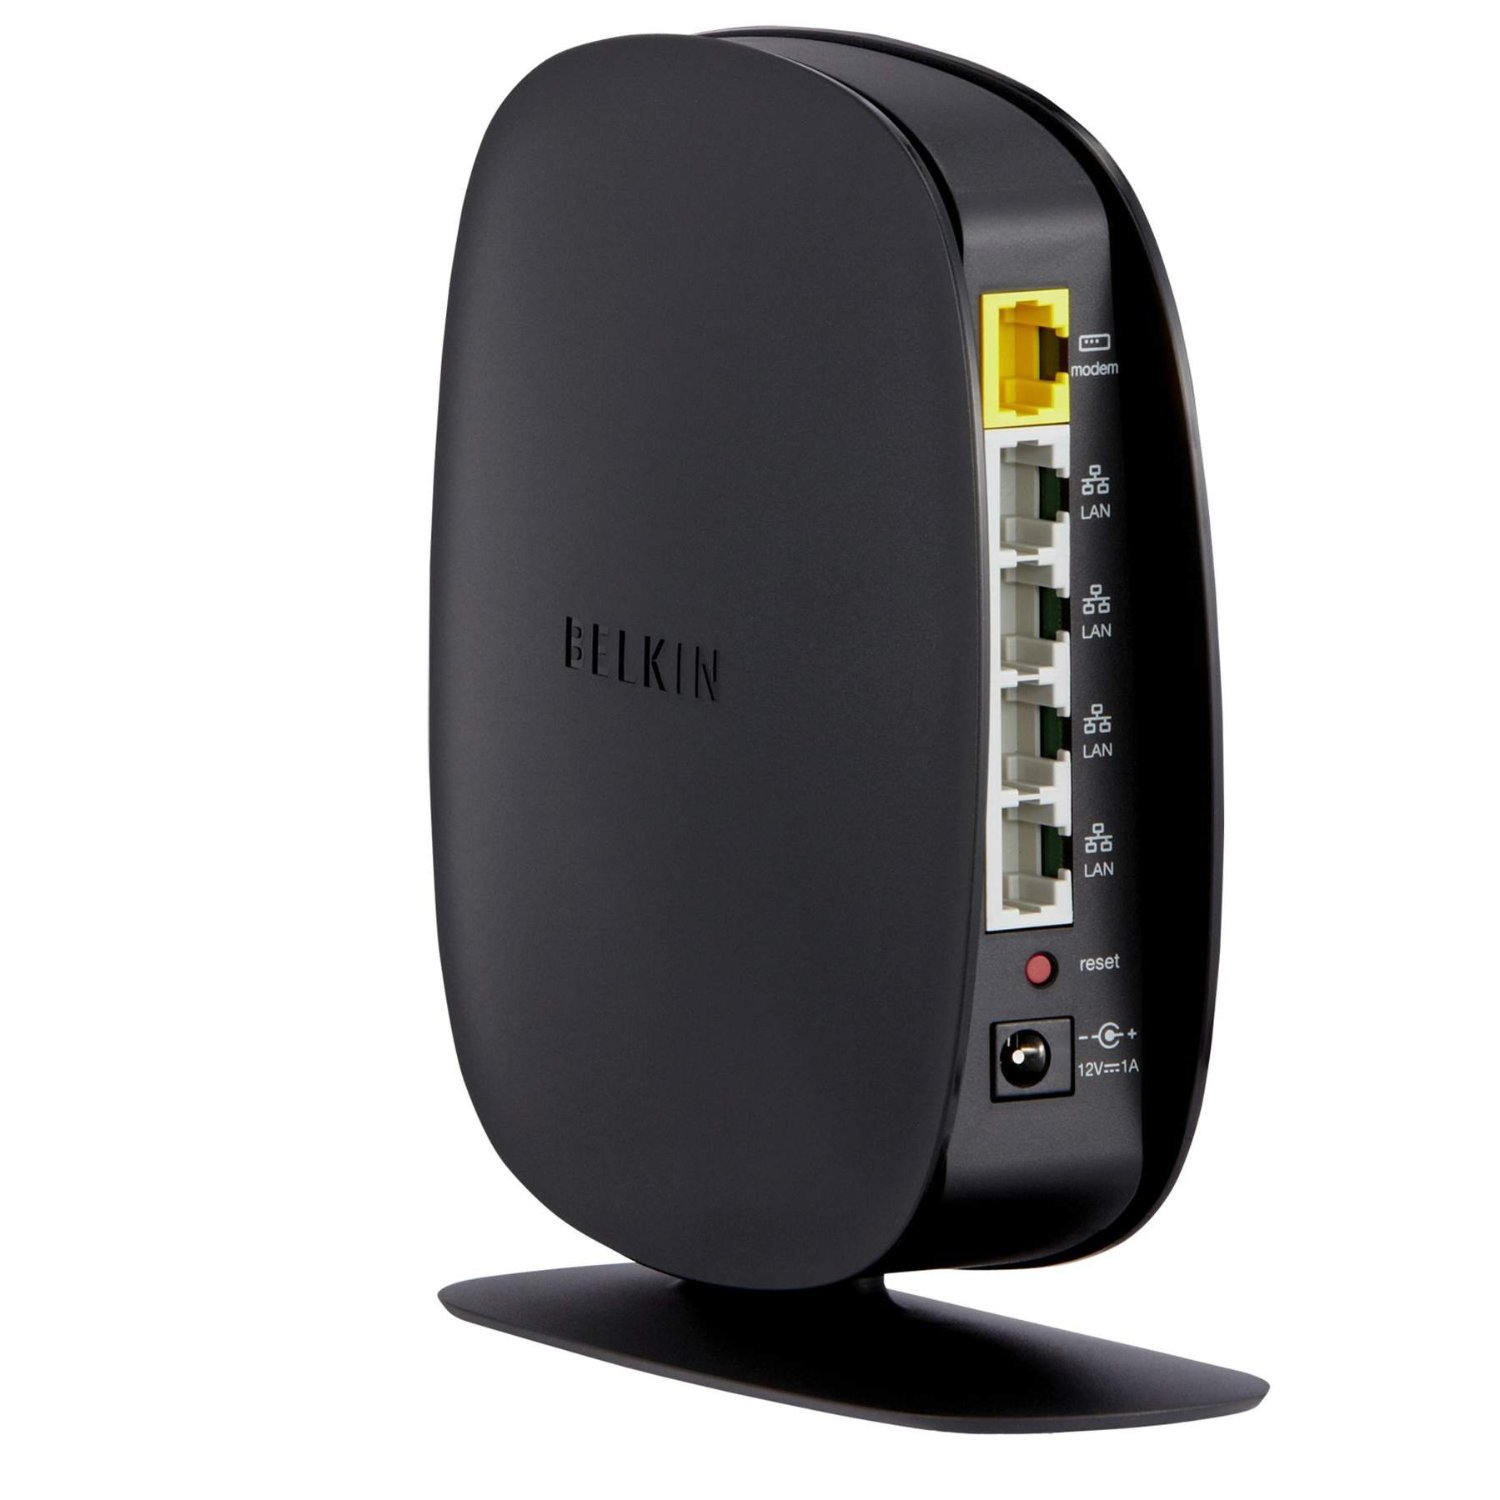 Belkin N150 Latest Generation Wireless N Router - The Tech ...